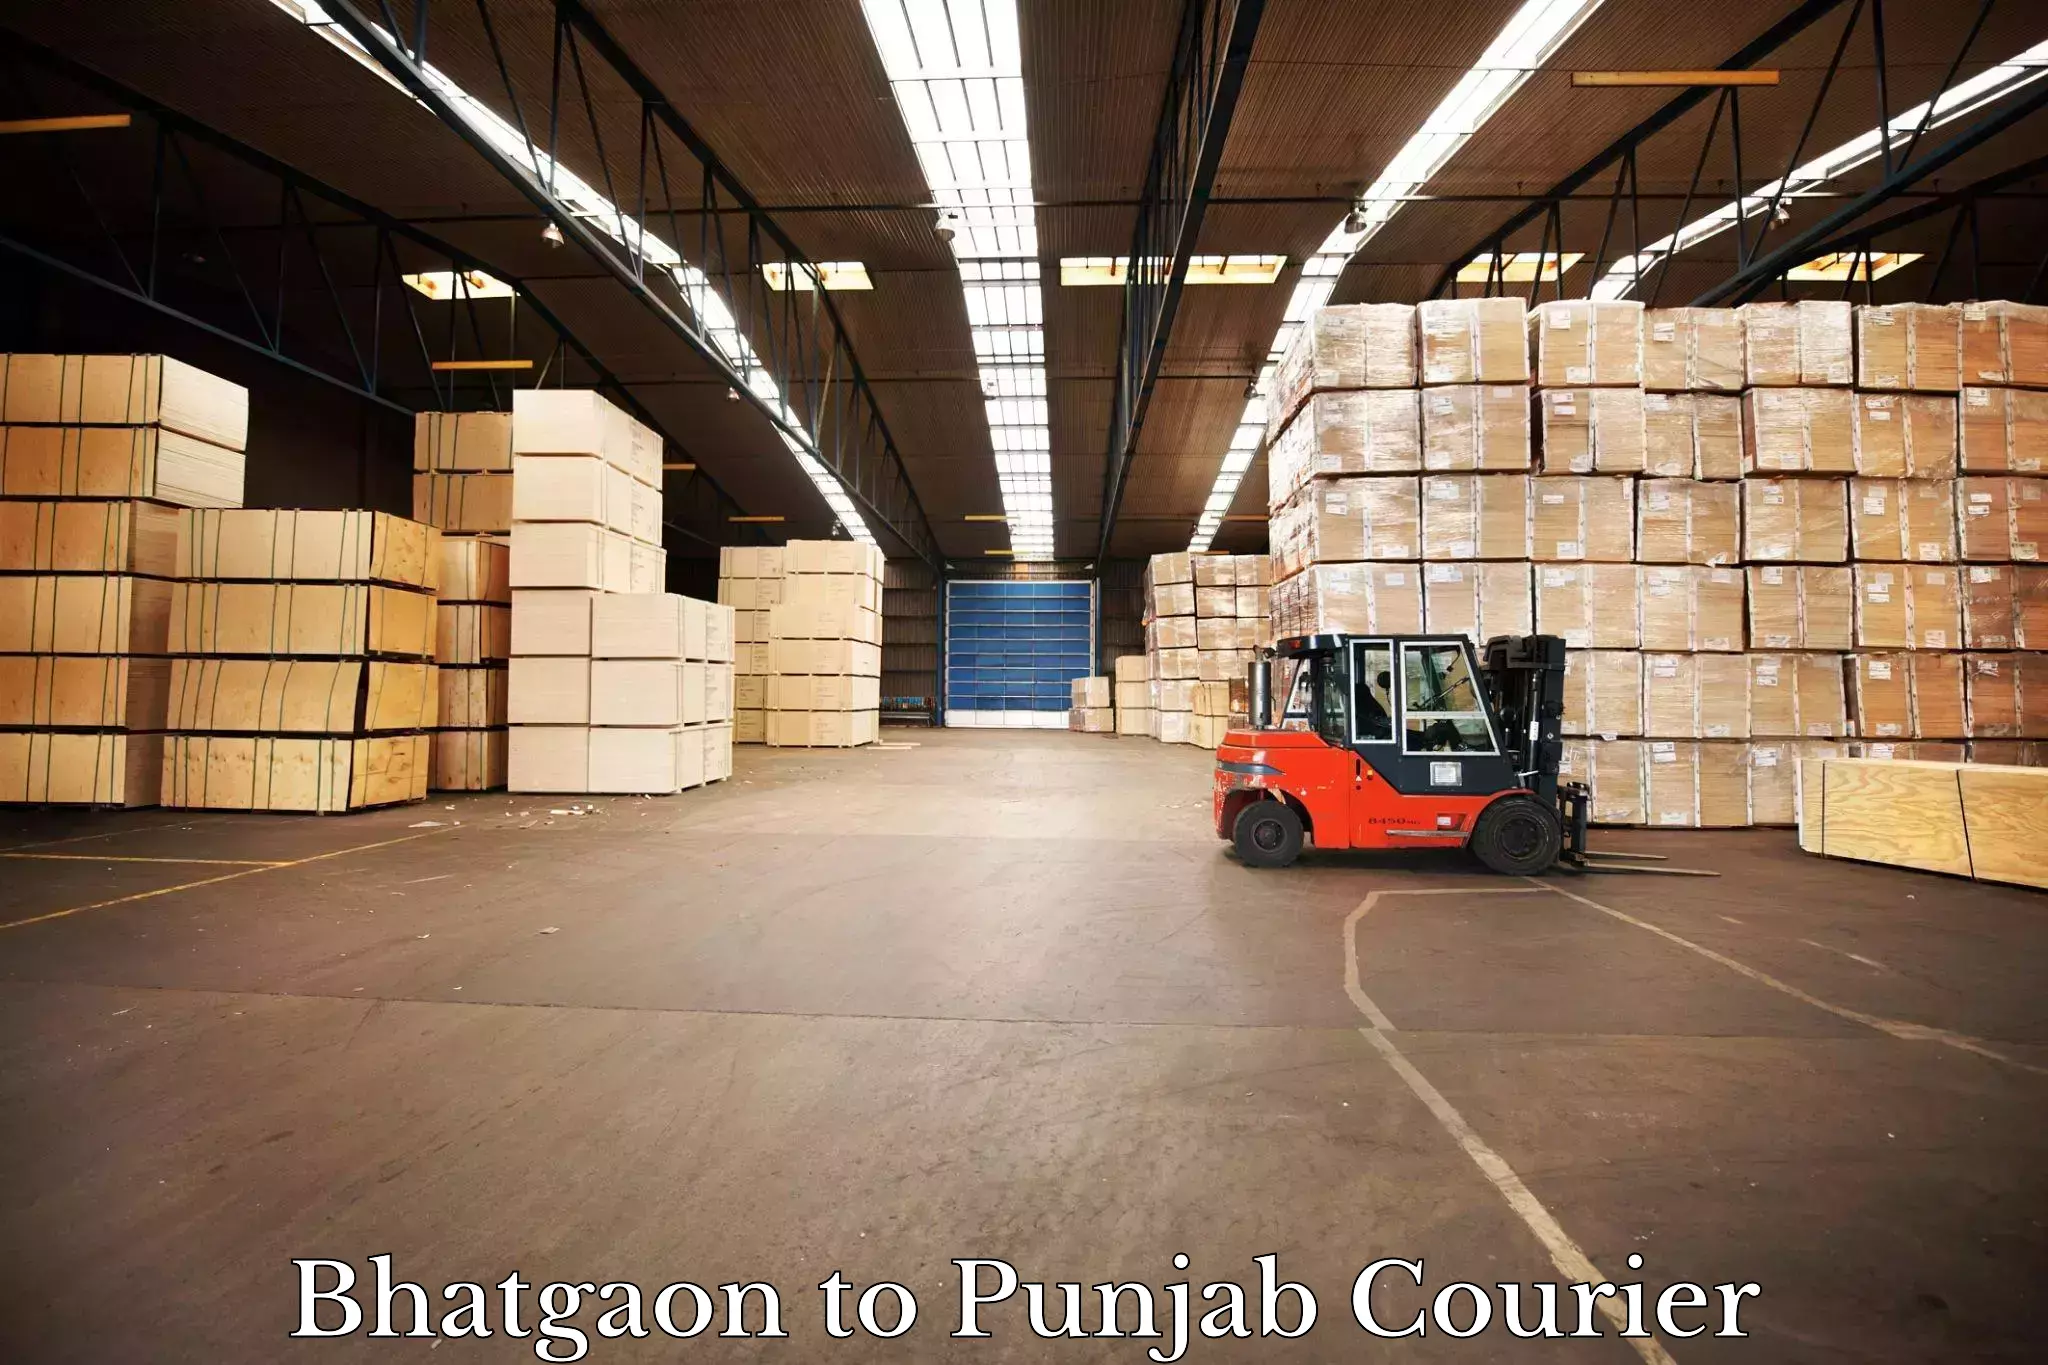 Expedited shipping methods in Bhatgaon to Punjab